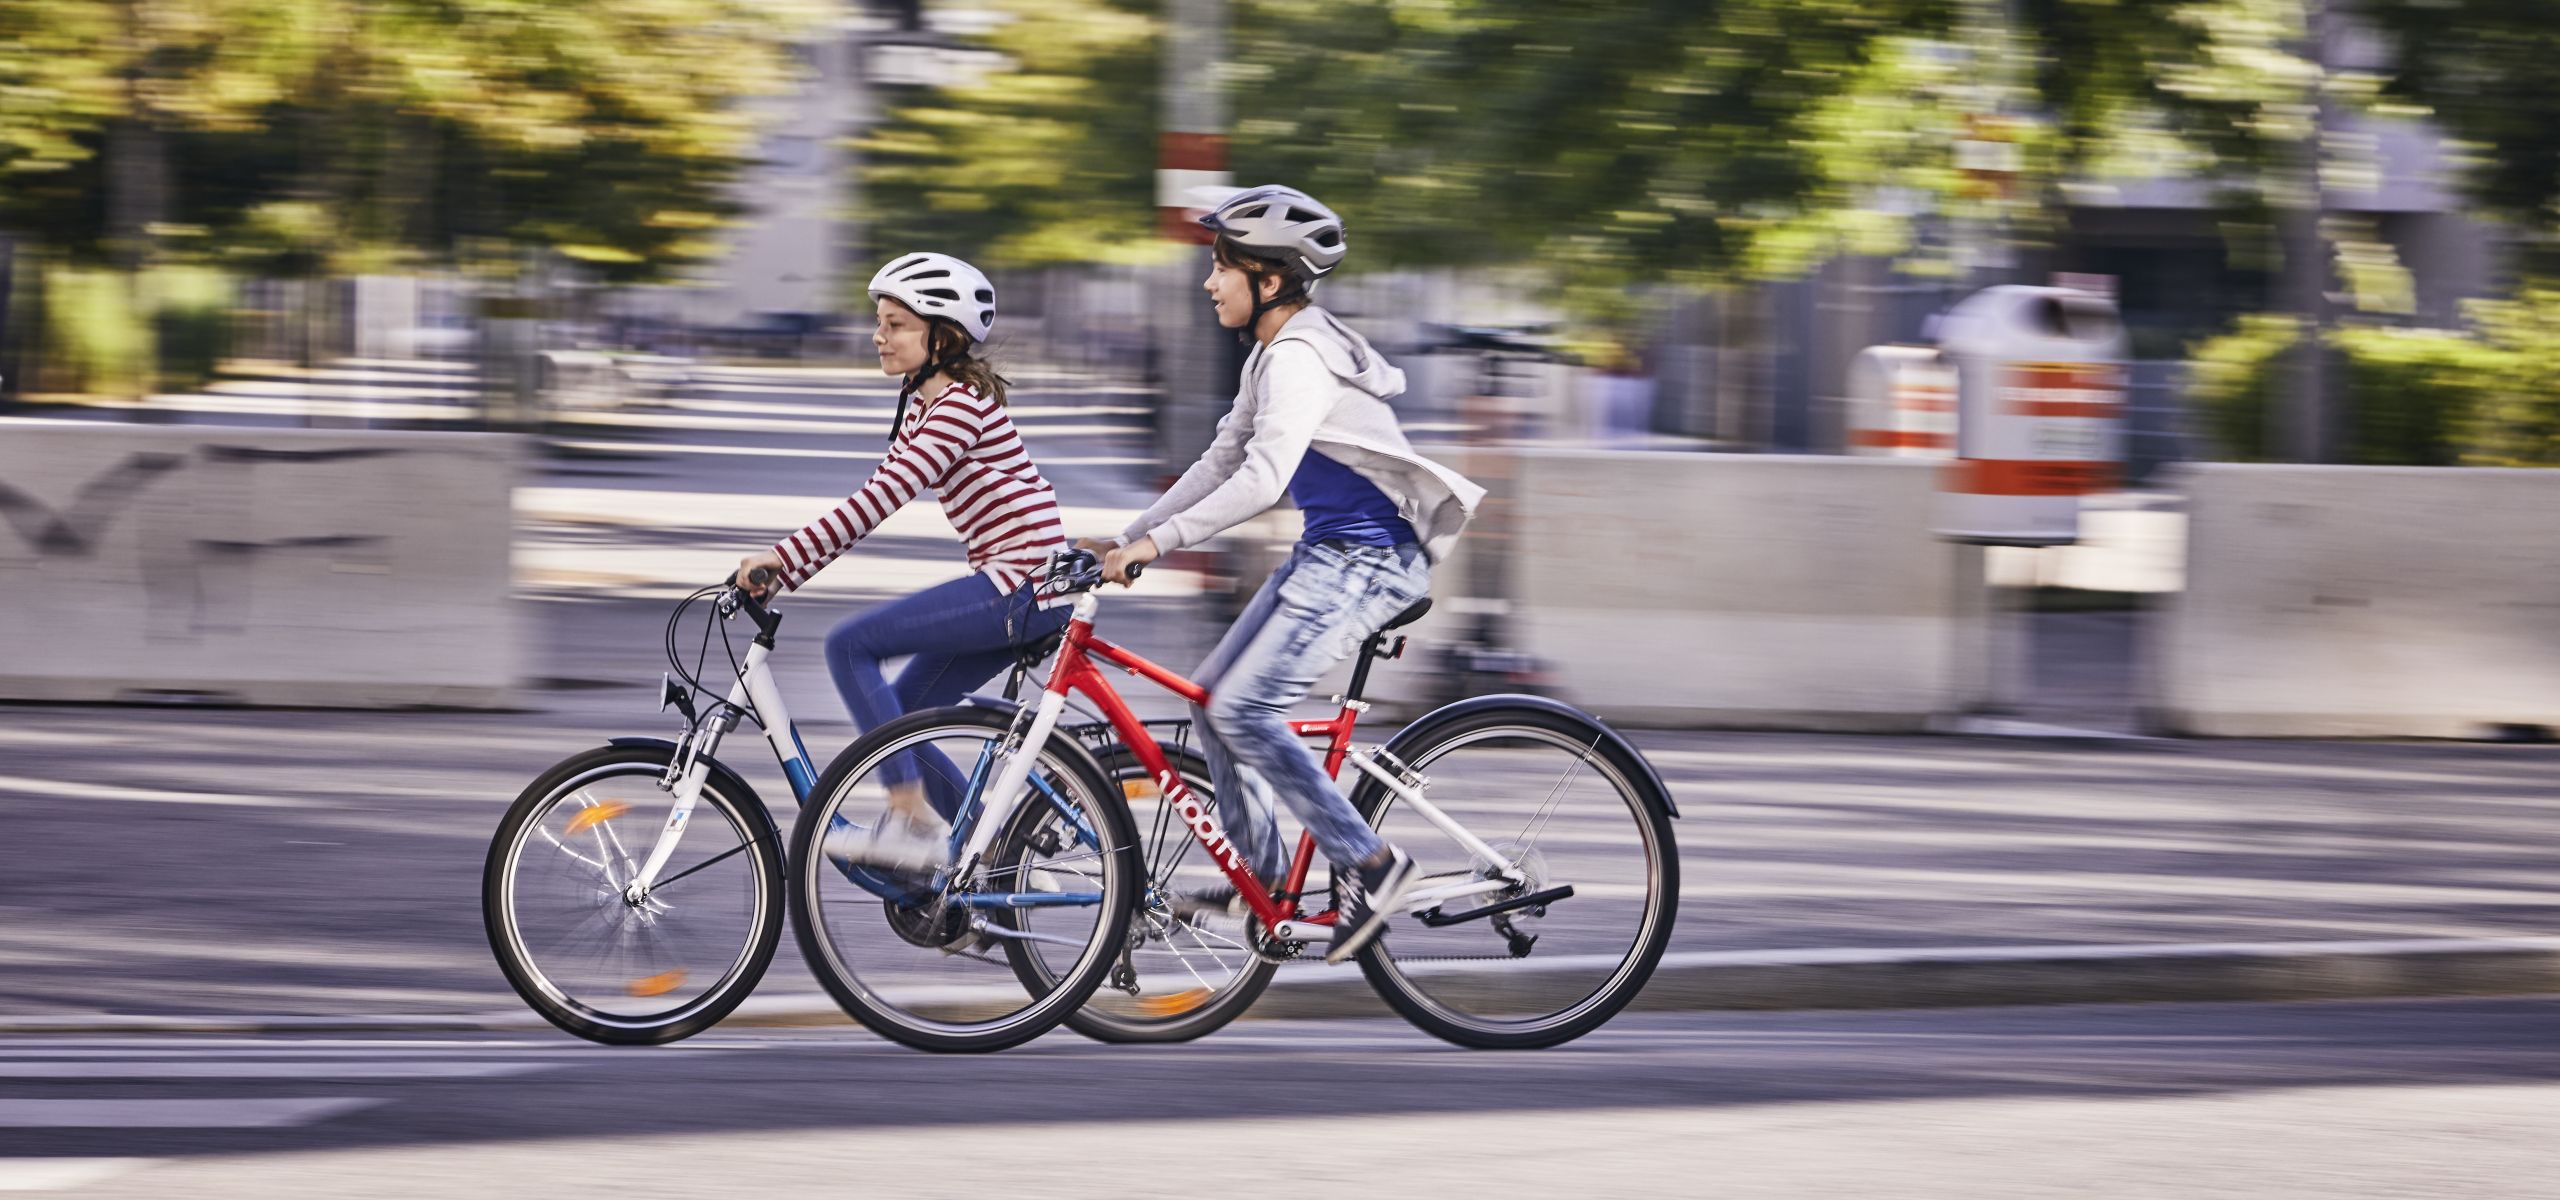 Ein Bub und ein Mädchen fahren mit dem Fahrrad.